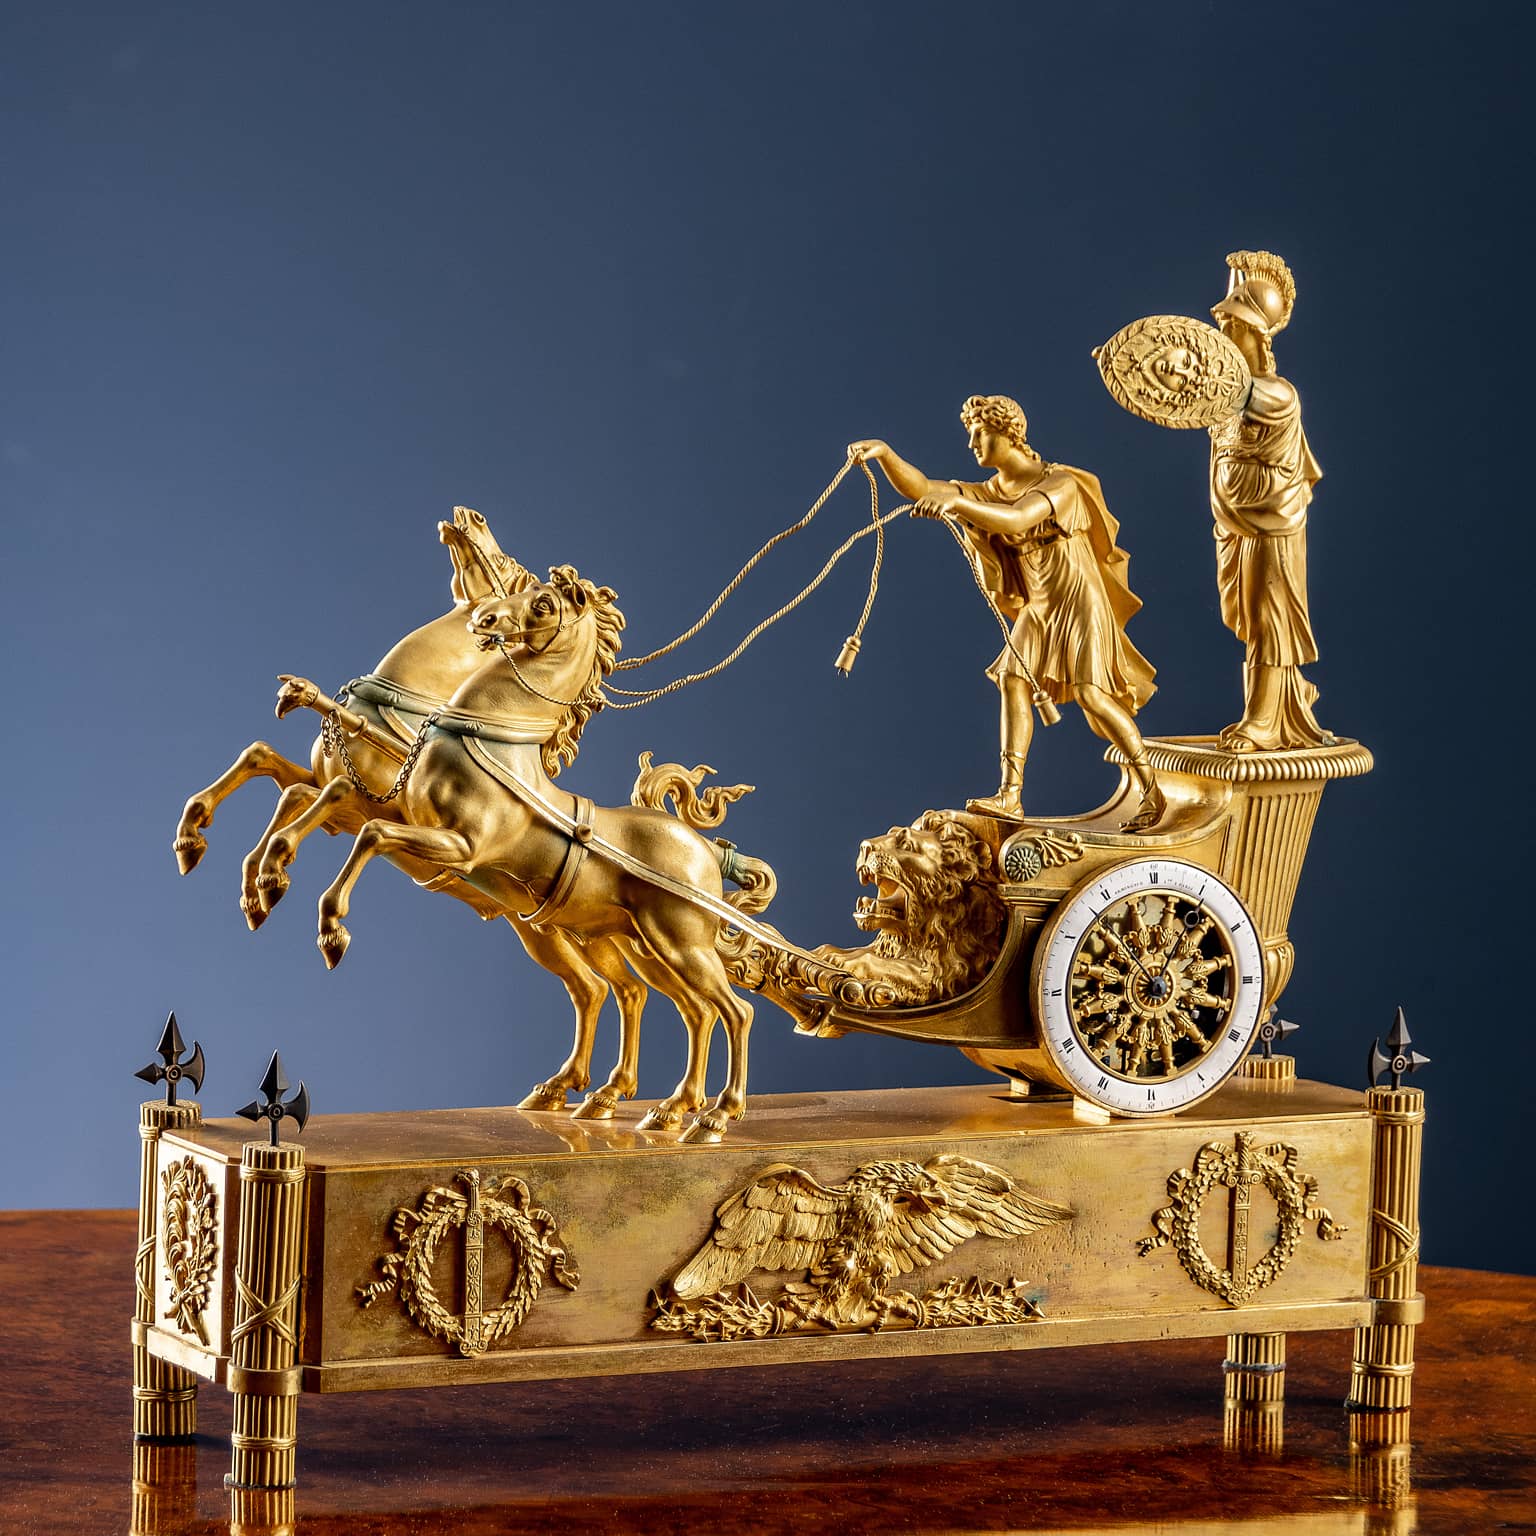 “Telemachus’ chariot” clock